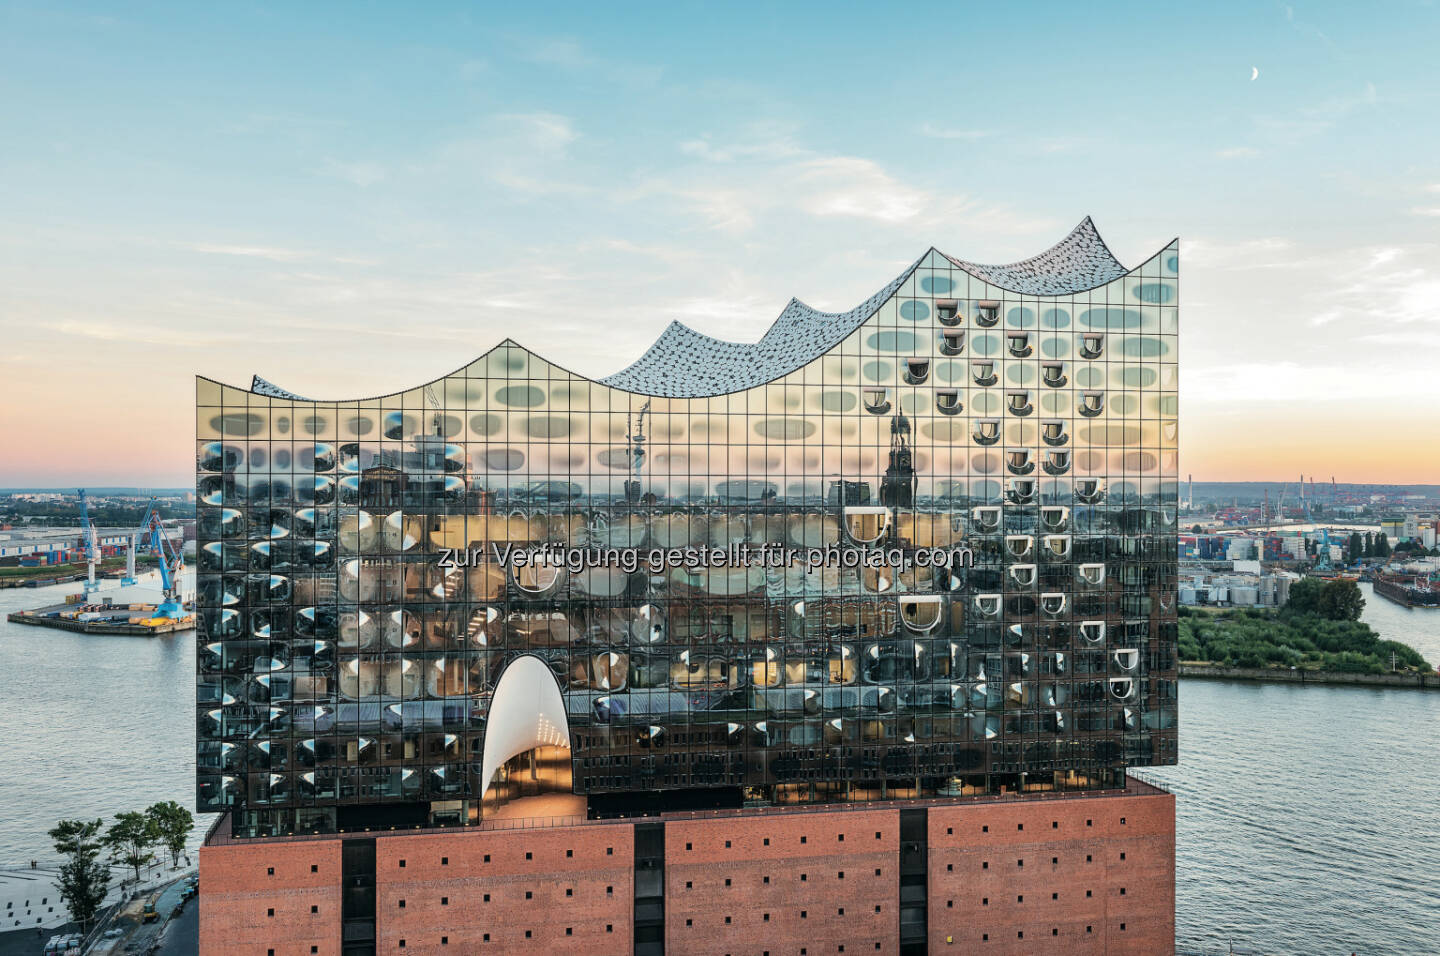 Zumtobel: m 11. Januar 2017 wird die Elbphilharmonie eröffnet. Zumtobel, eine Marke der Zumtobel Group, hat verschiedene Beleuchtungslösungen im Inneren des neuen Hamburger Wahrzeichens realisiert